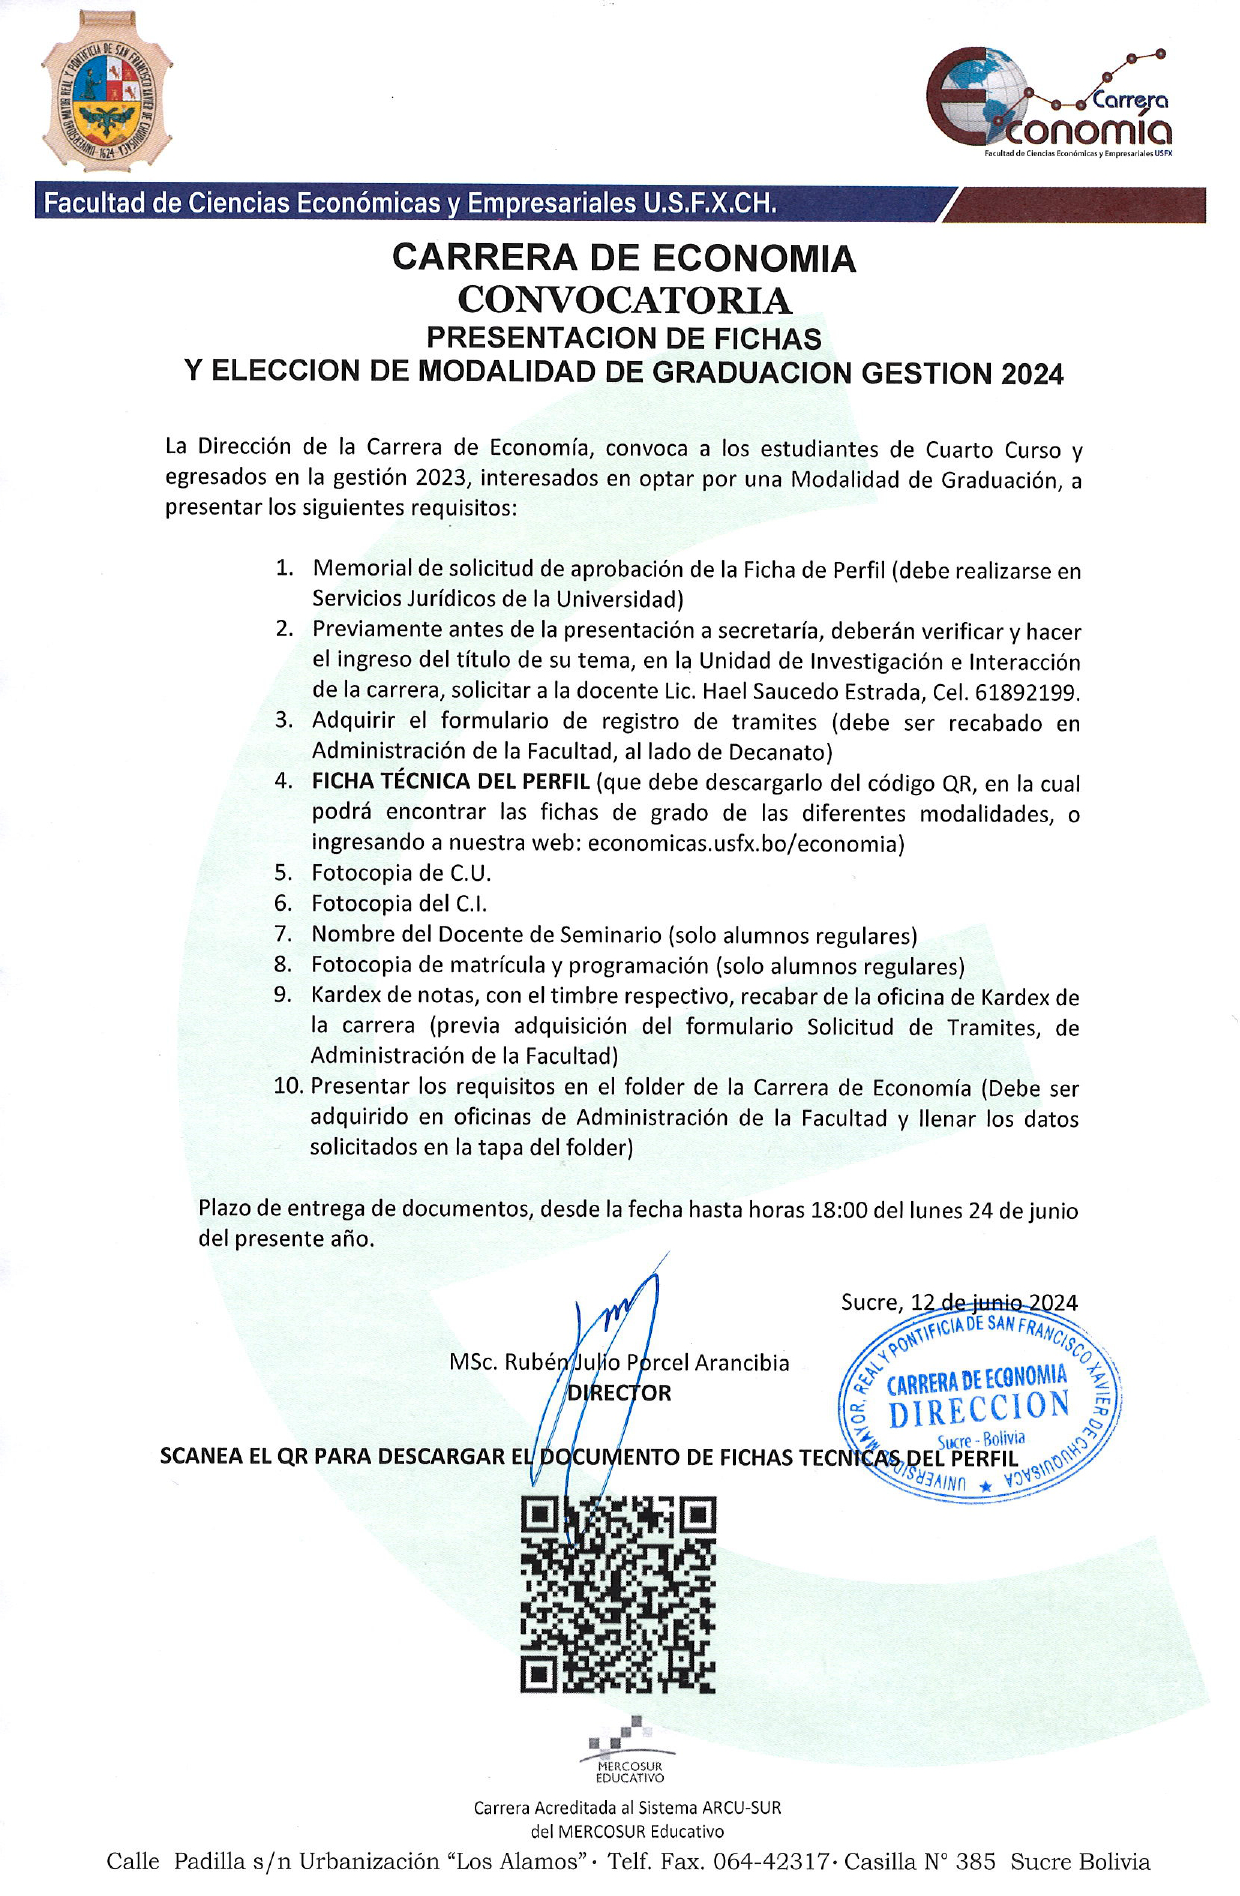 CONVOCATORIA – CARRERA DE ECONOMÍA – PRESENTACIÓN DE FICHAS  Y ELECCIÓN DE MODALIDAD DE GRADUACIÓN GESTIÓN 2024